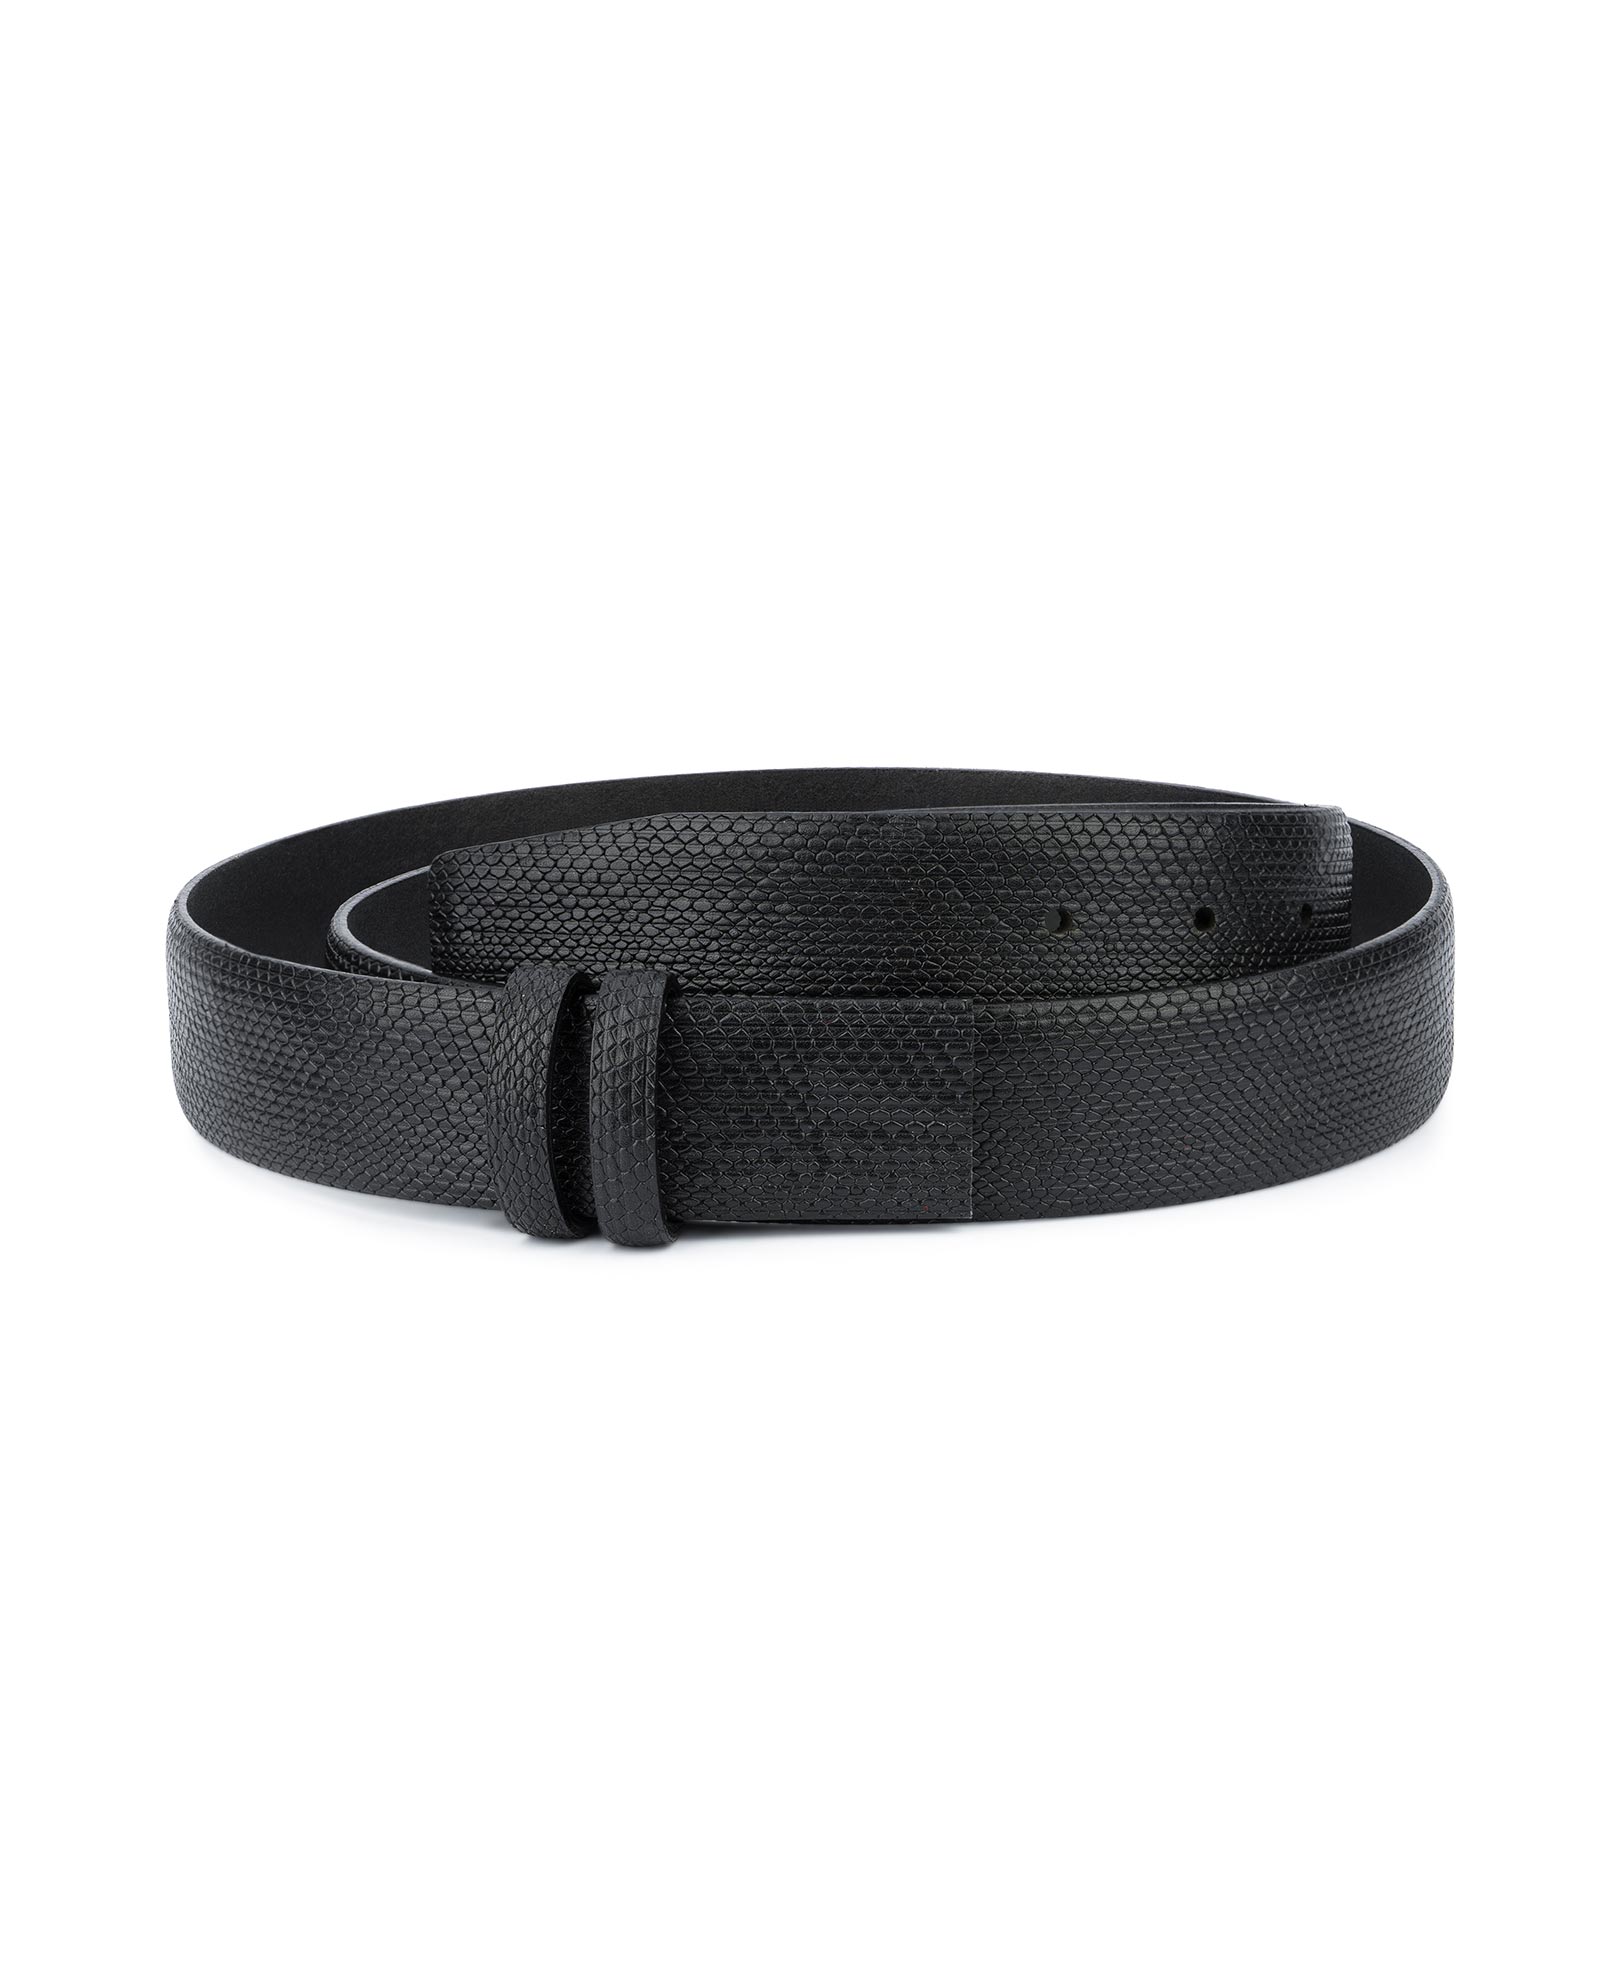 https://leatherbeltsonline.com/wp-content/uploads/2020/04/Mens-Snakeskin-Belt-No-Buckle-Black-Adjustable-1.jpg